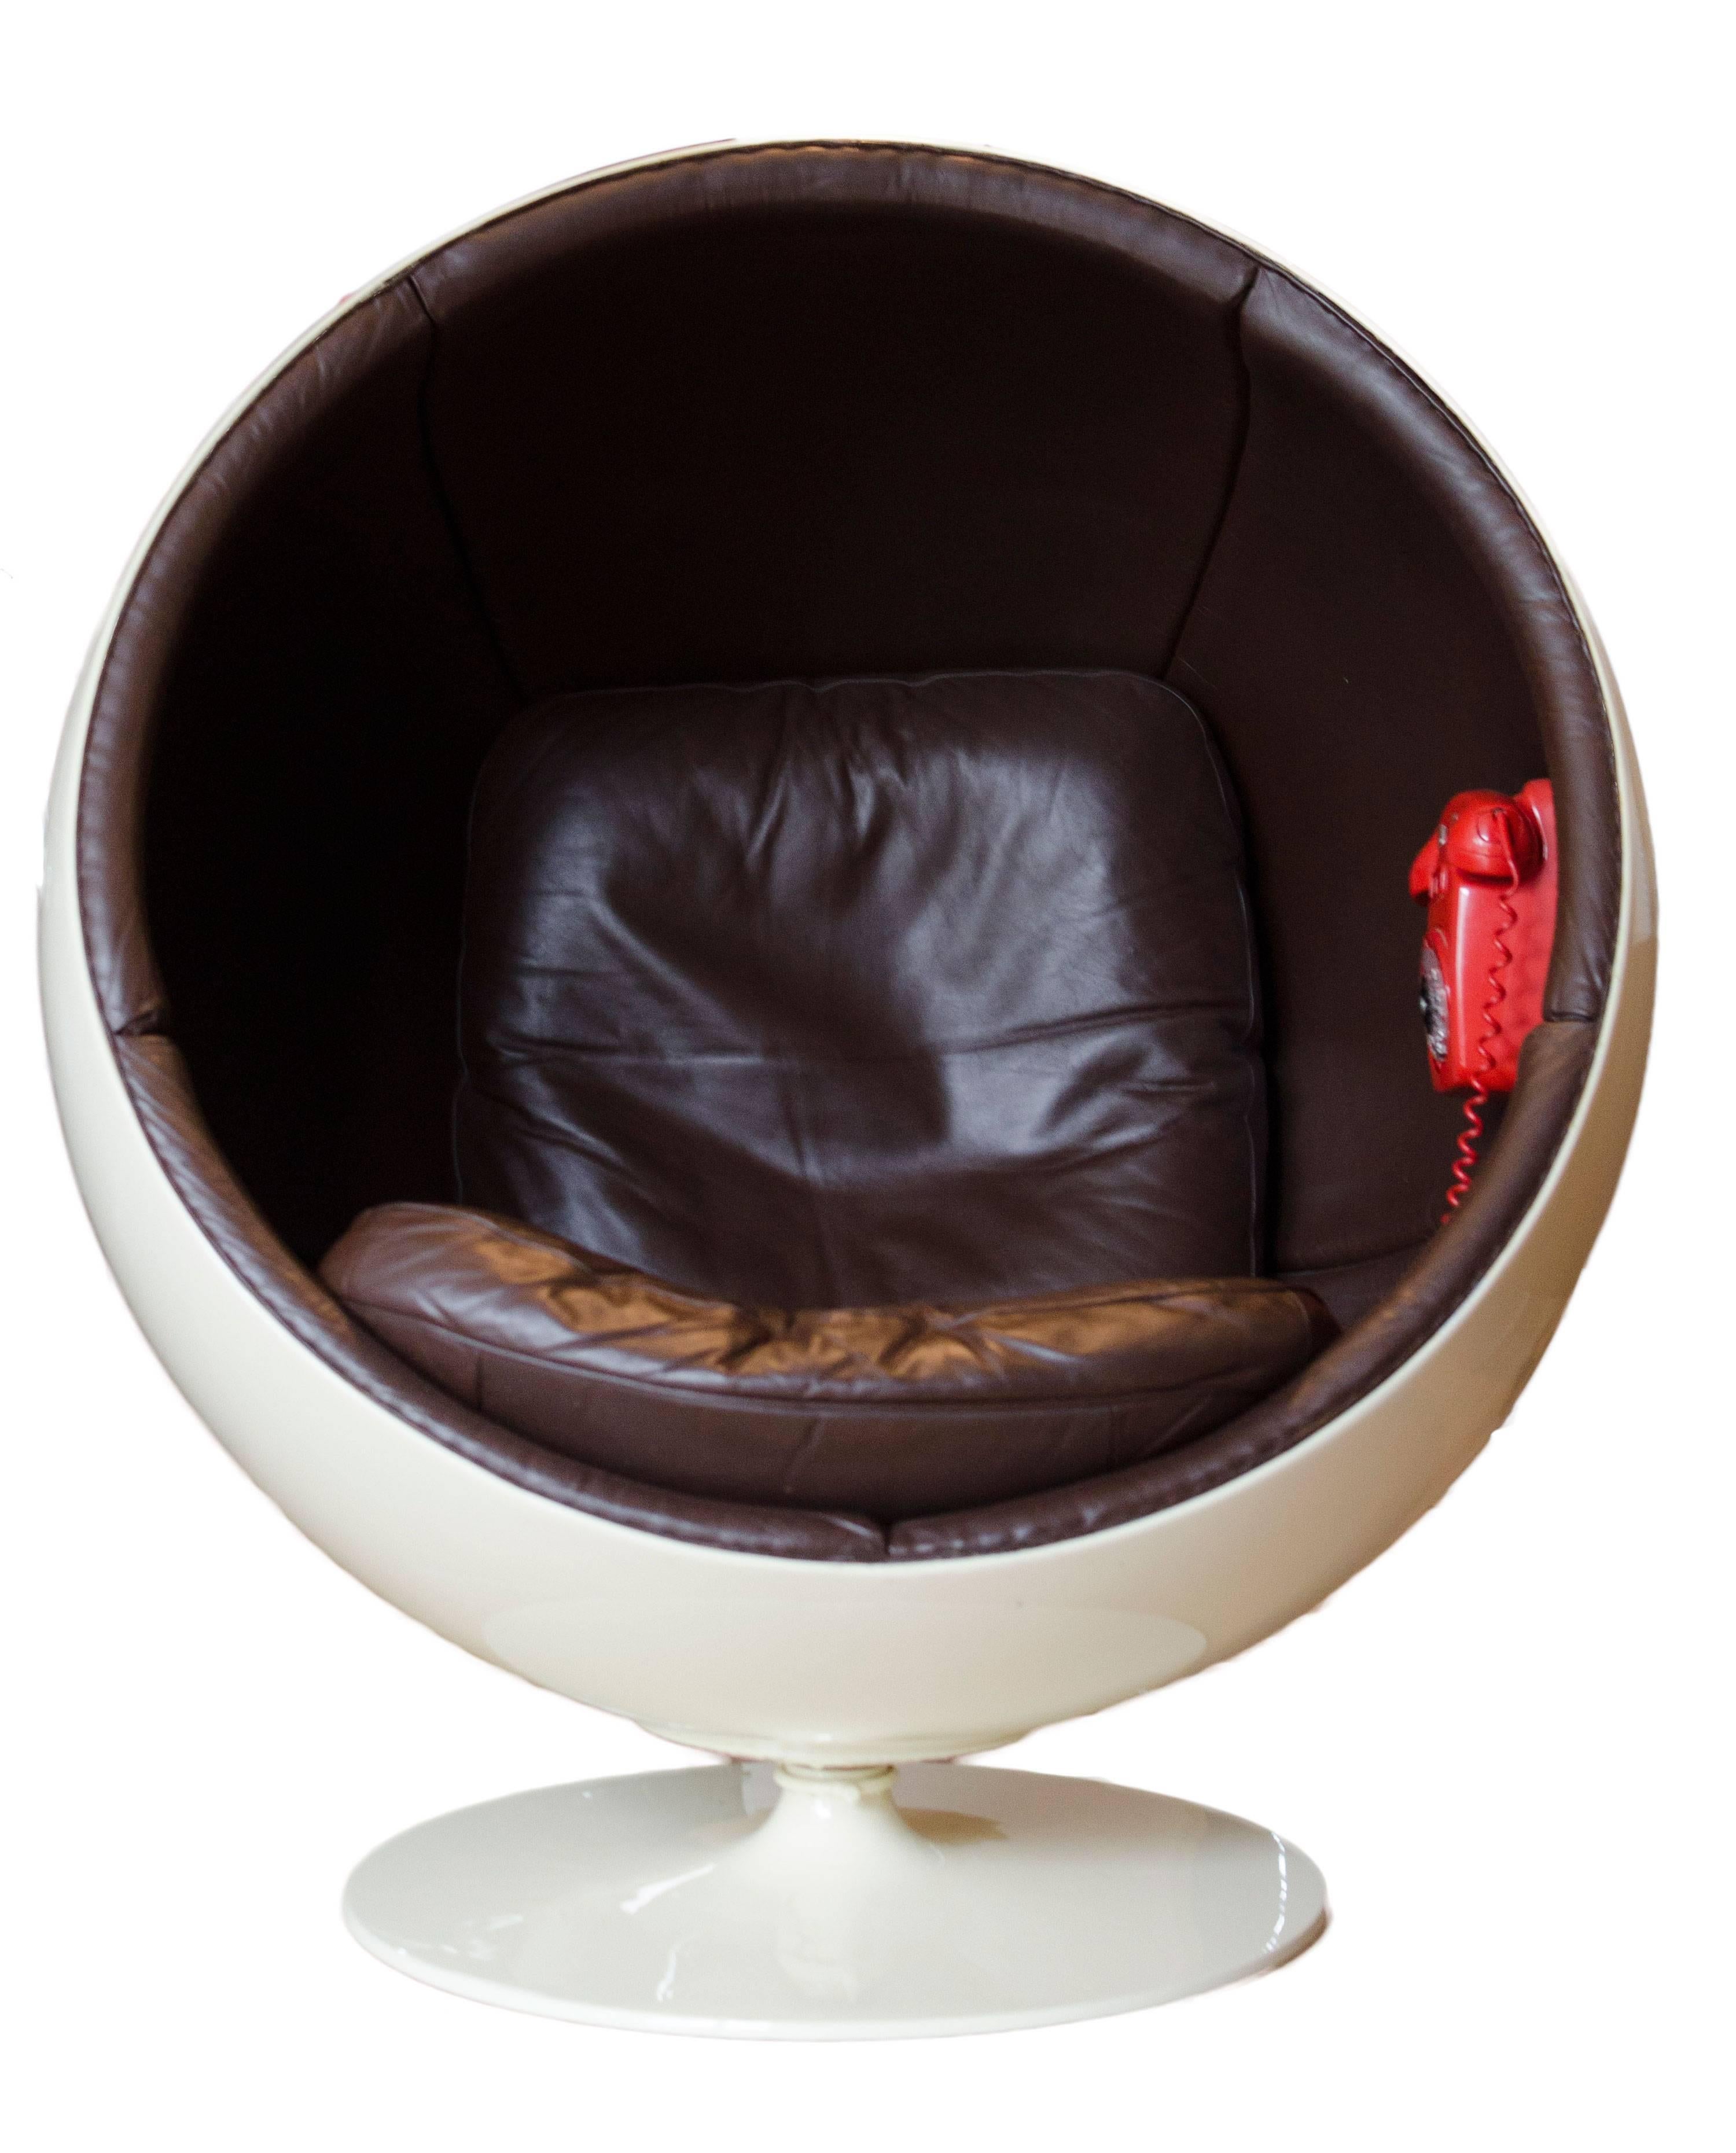 Extrem seltener Ball Chair von Eero Aarnio Made by Asko mit Telefon !! (Finnisch)